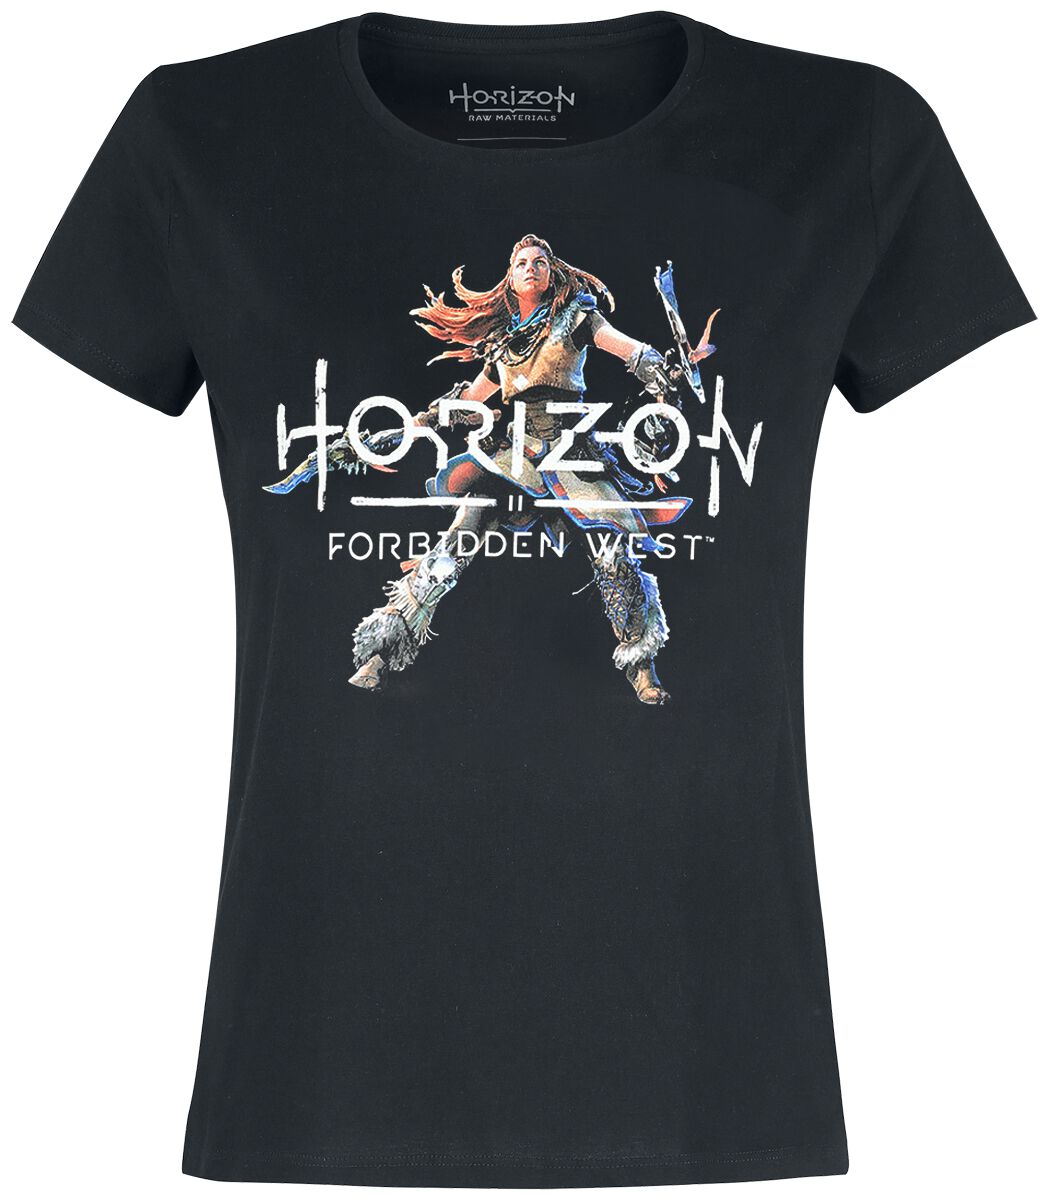 T-Shirt Manches courtes Gaming de Horizon - Forbidden West - Announcement 2021 - S à XXL - pour Femm